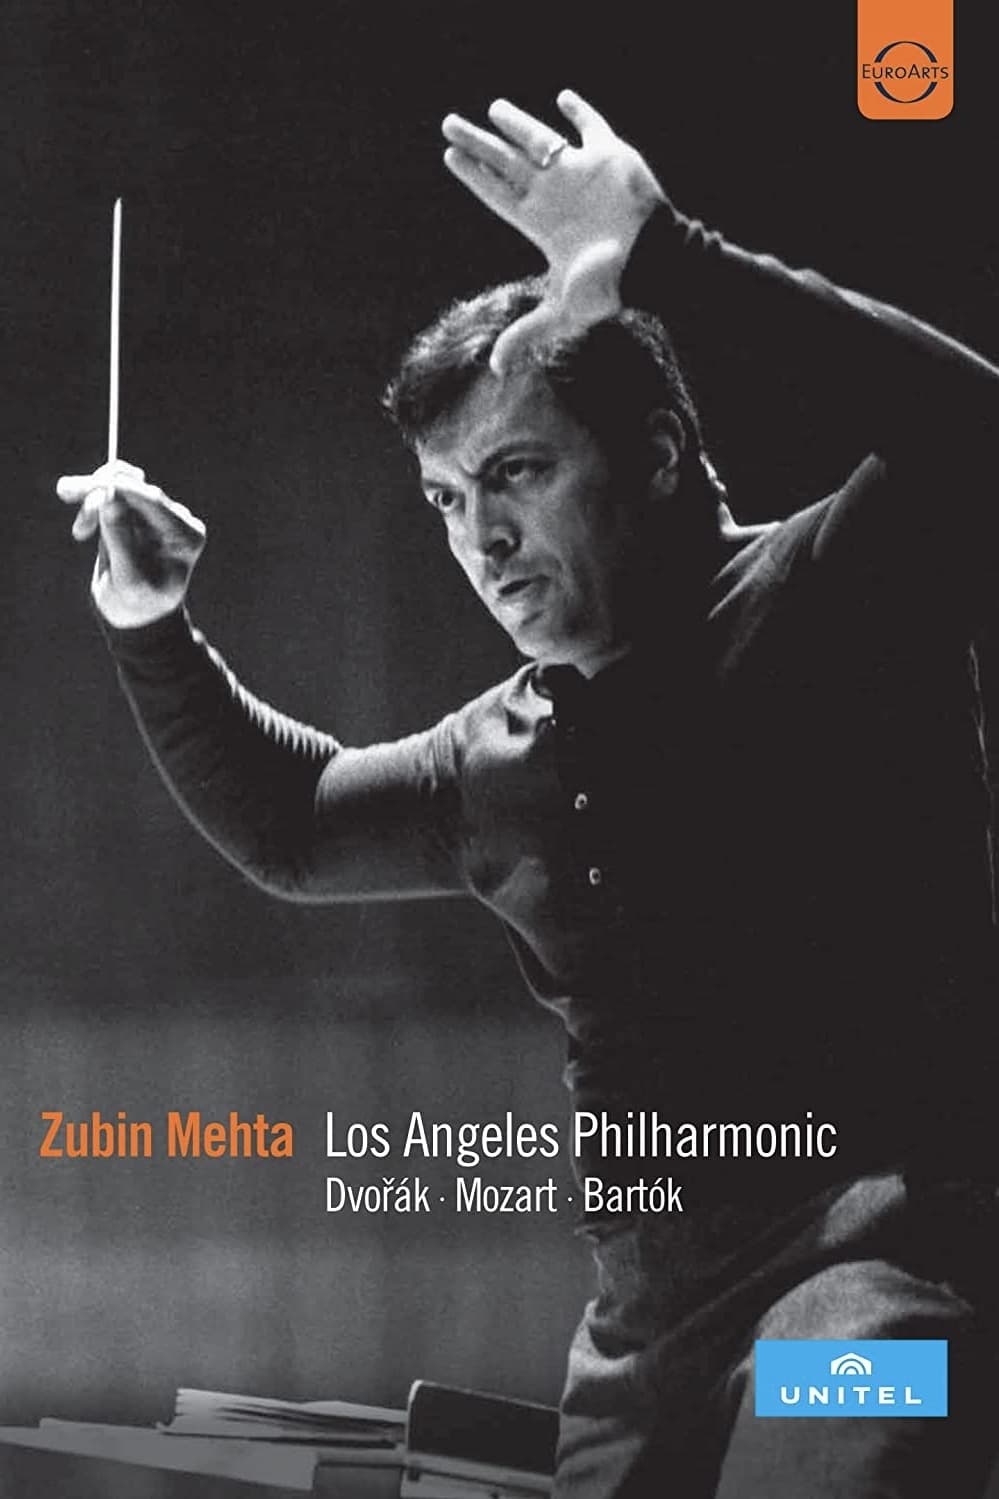 Zubin Mehta: Los Angeles Philharmonic